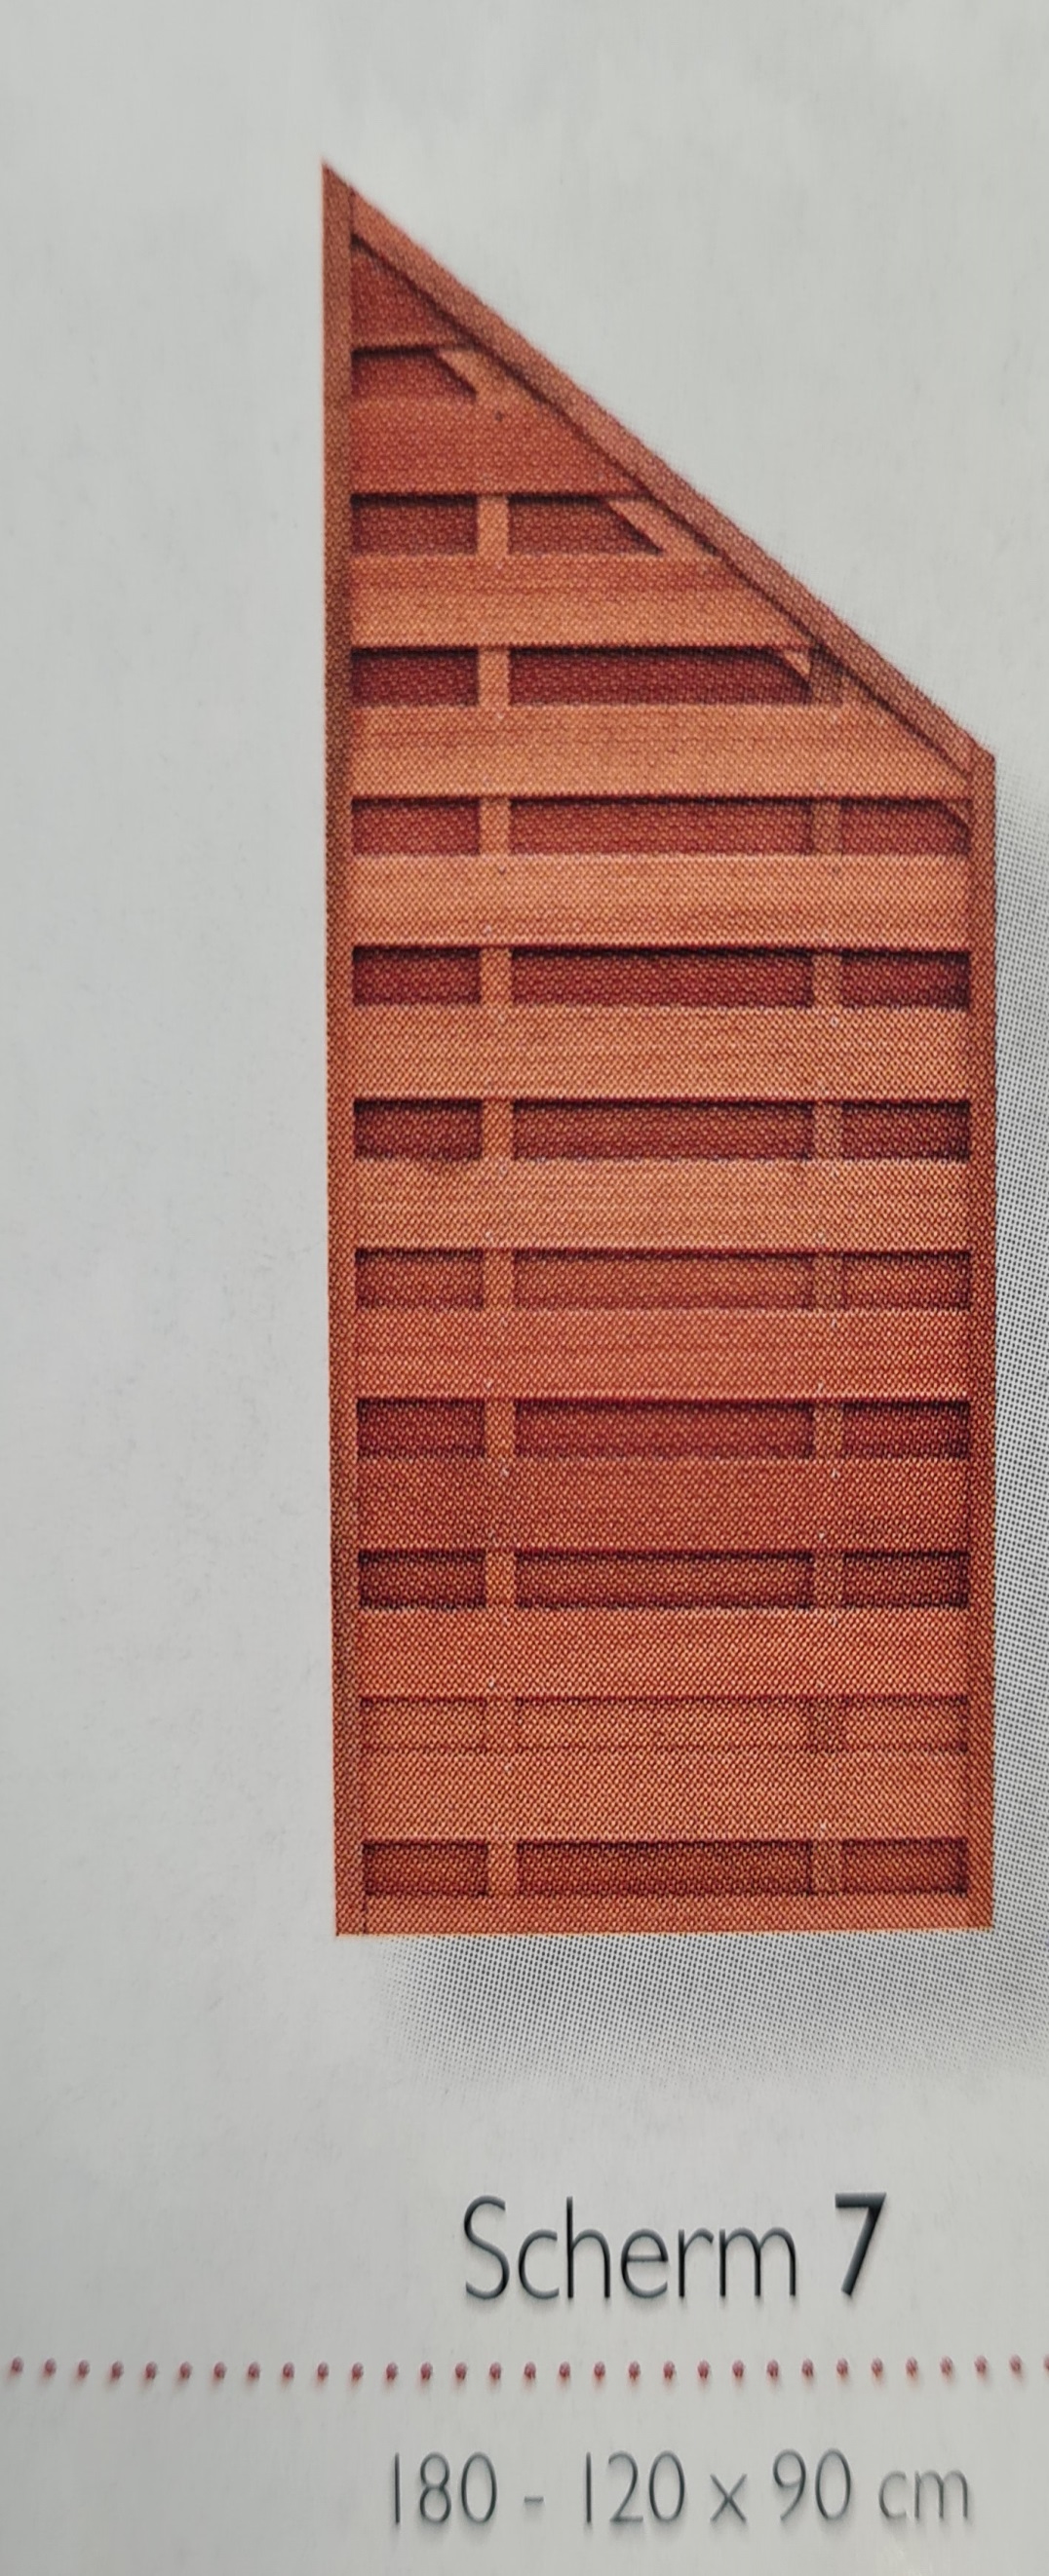 Elegant Scherm 7 bangkirai felixwood - 180x120x90cm